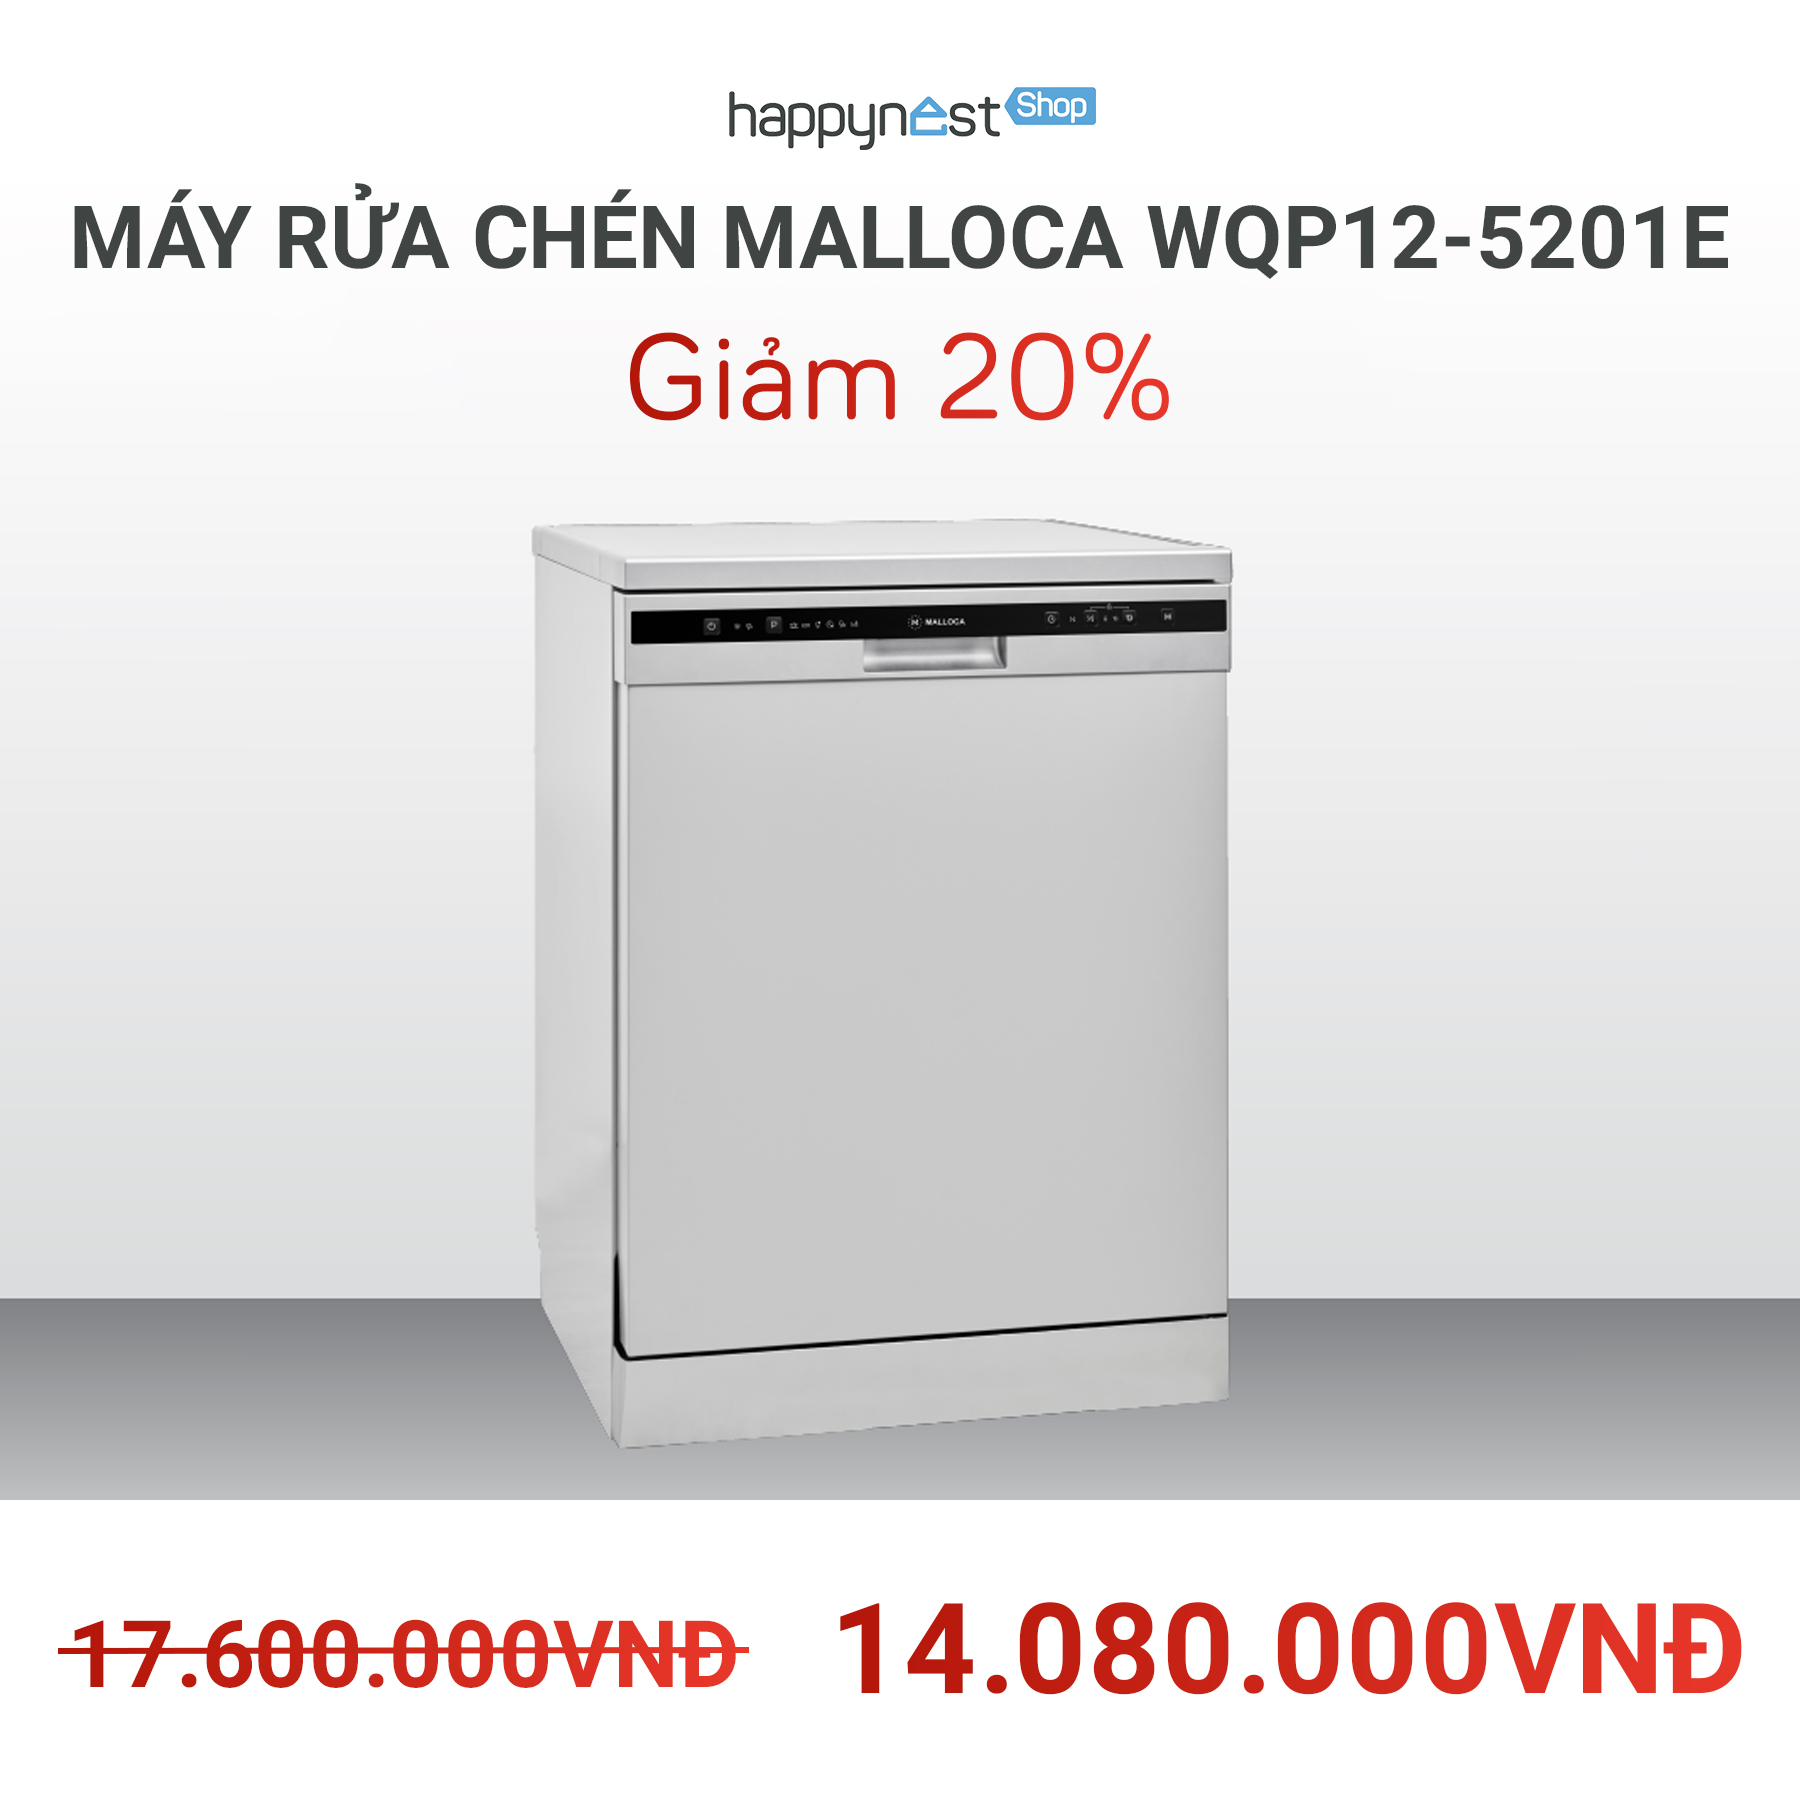 Máy rửa bát Malloca WQP12-5201E sở hữu 6 chương trình rửa, đáp ứng mọi nhu cầu của người dùng